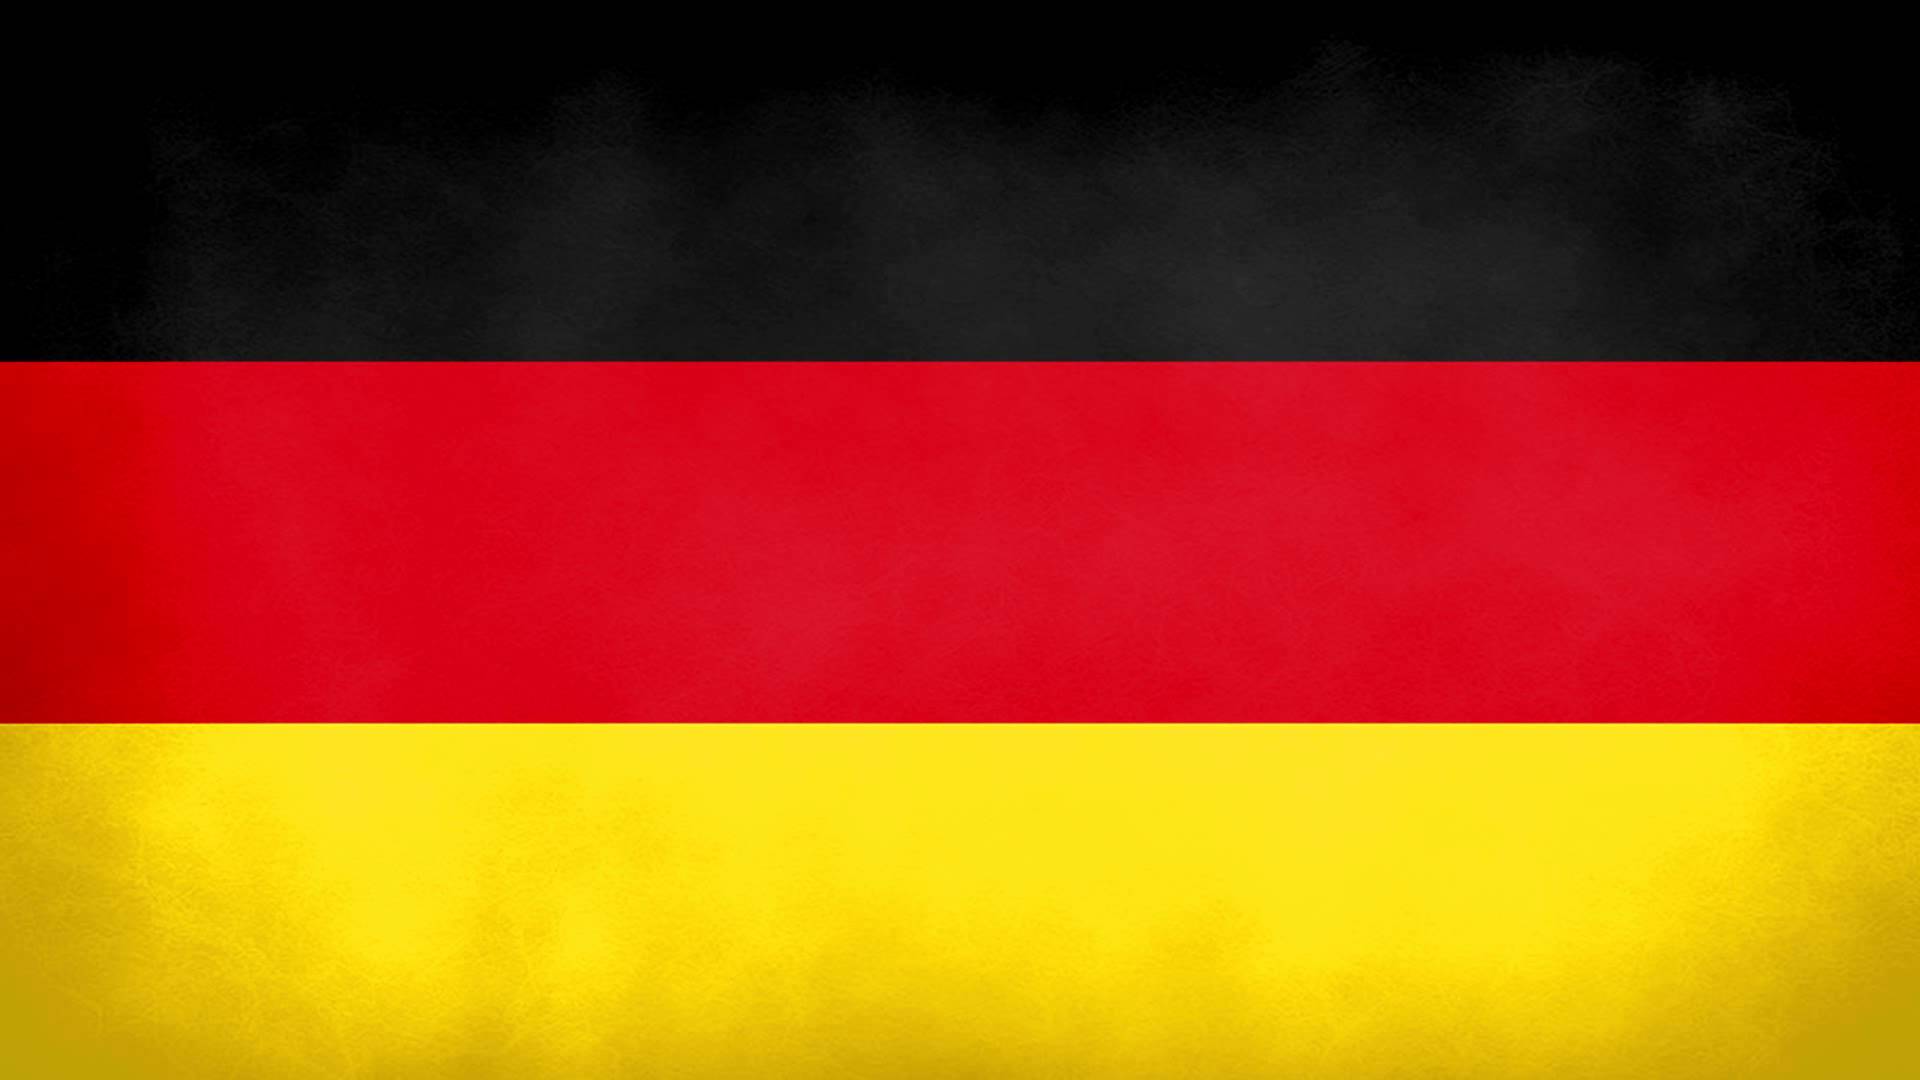 Germany National Anthem (Instrumental)